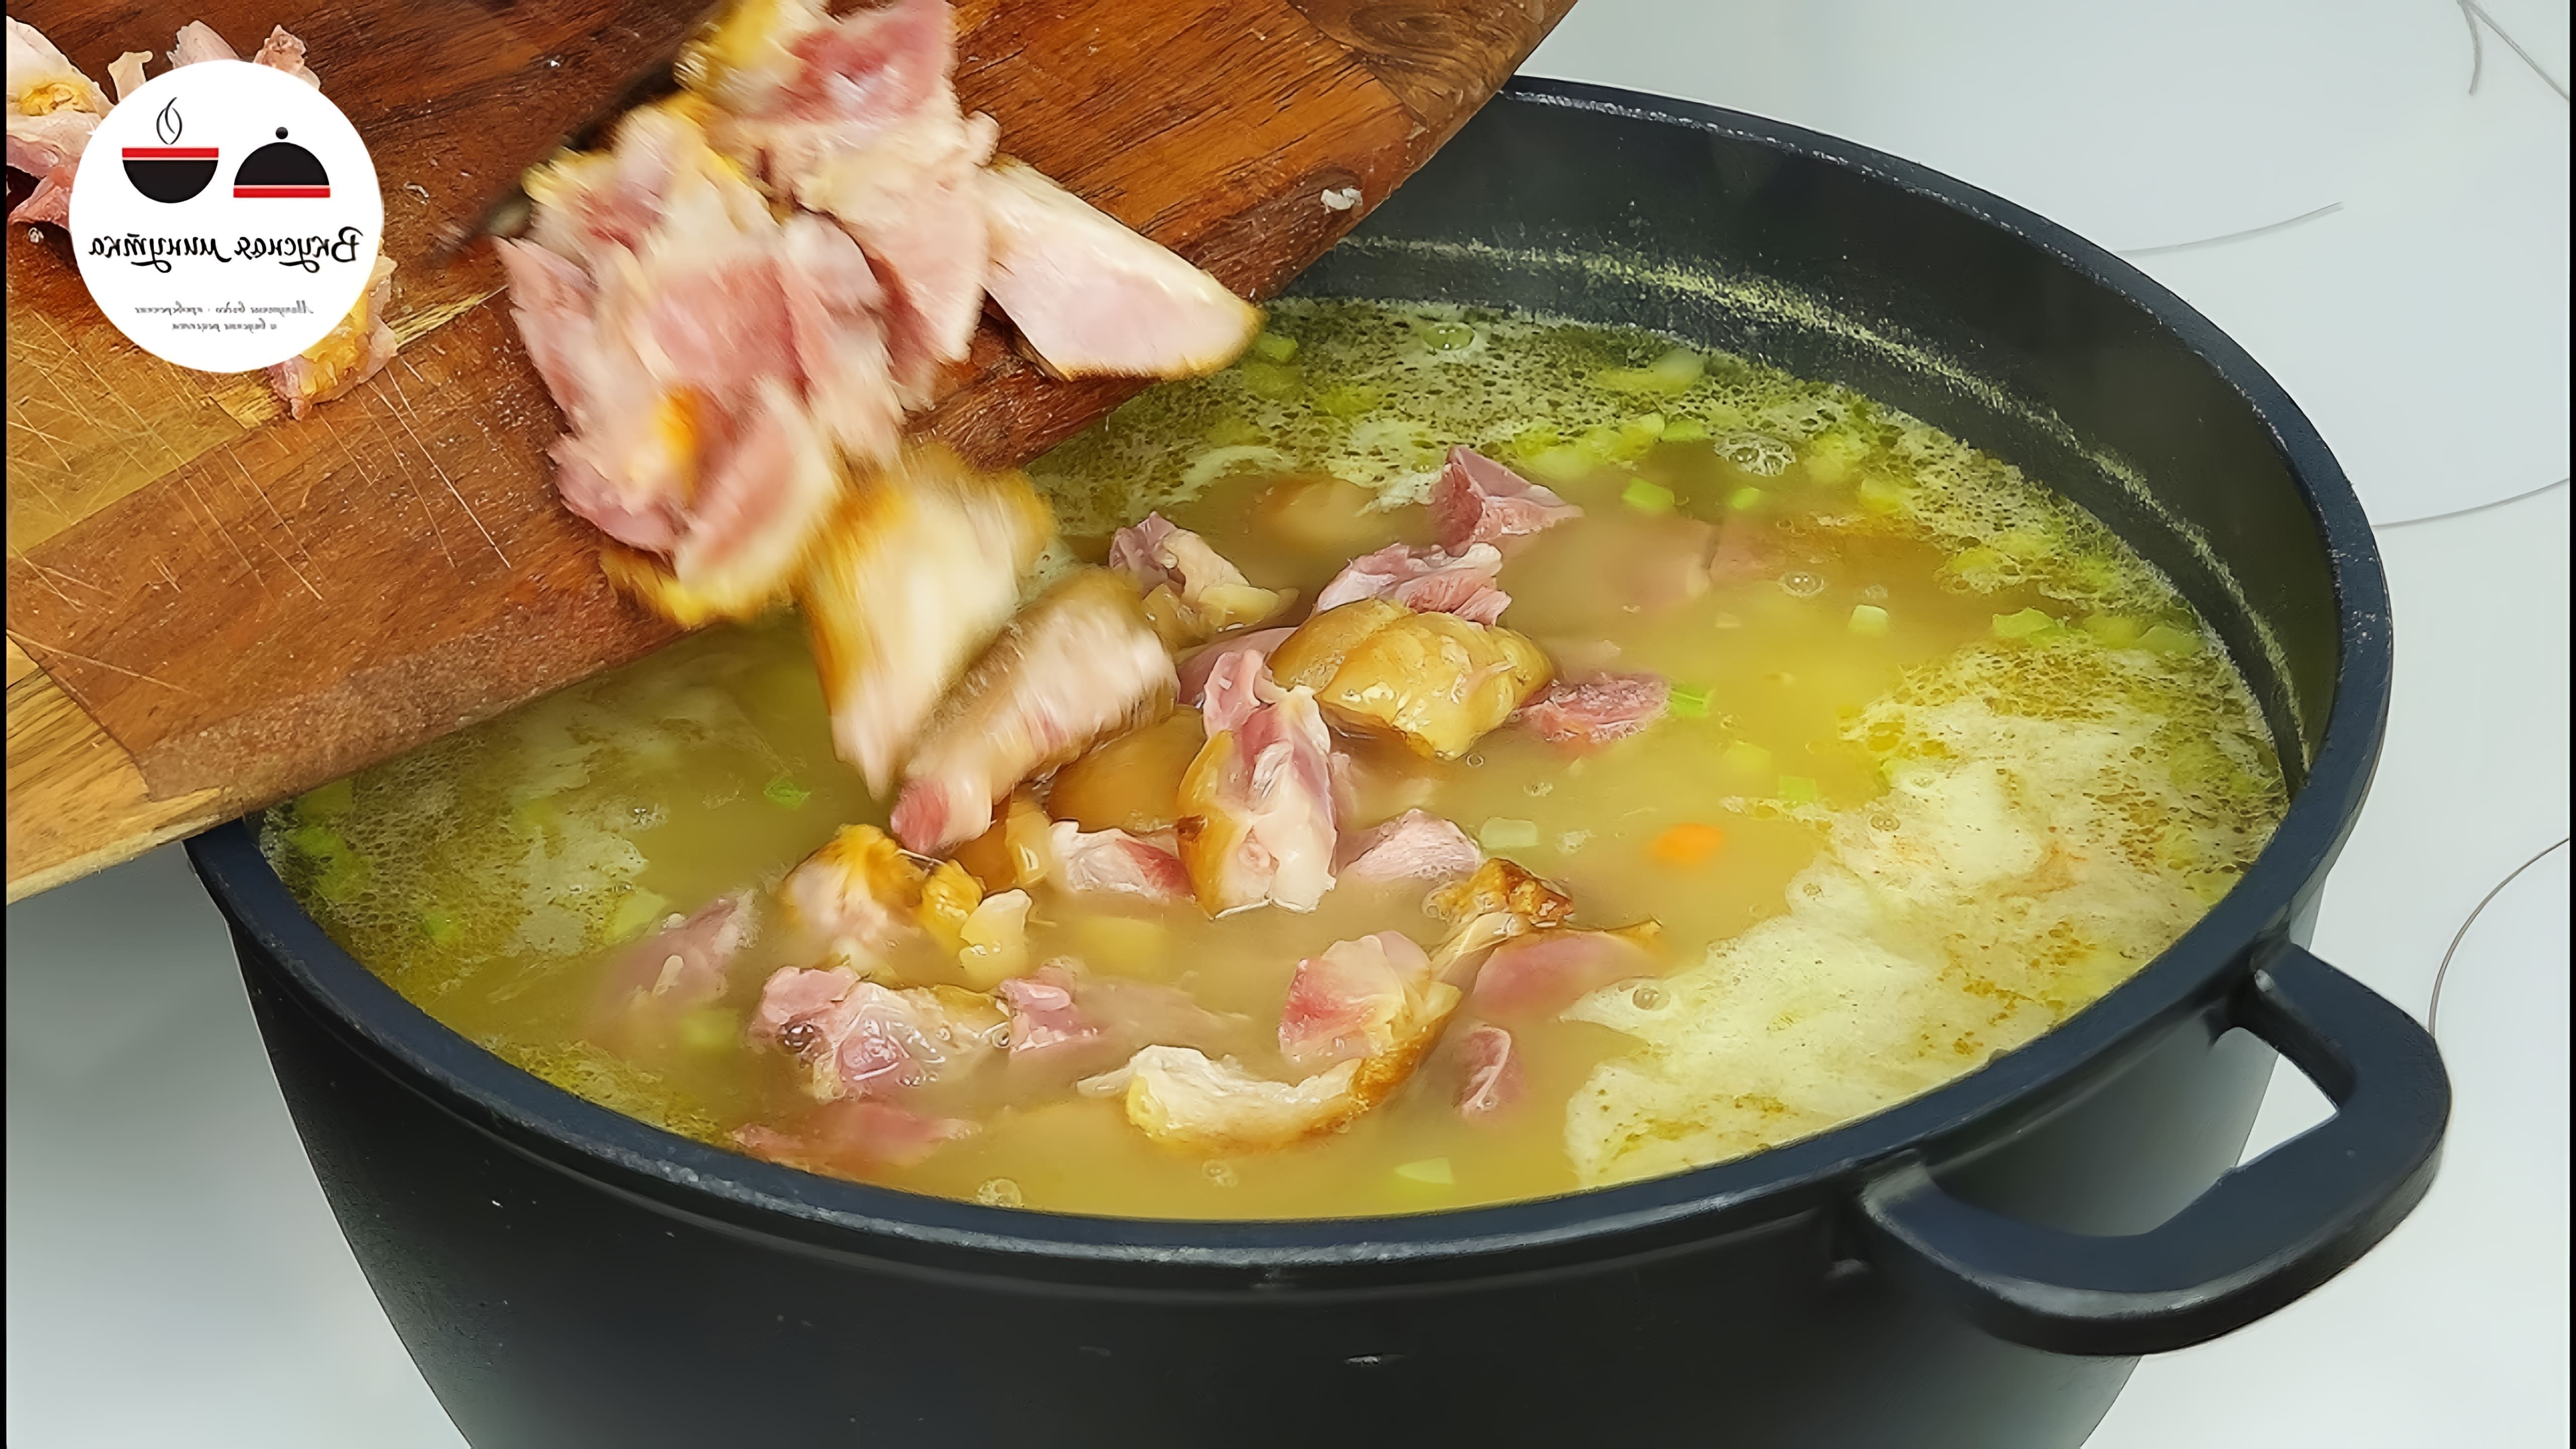 В этом видео-ролике я поделюсь своим любимым рецептом горохового супа, который я готовлю уже много лет